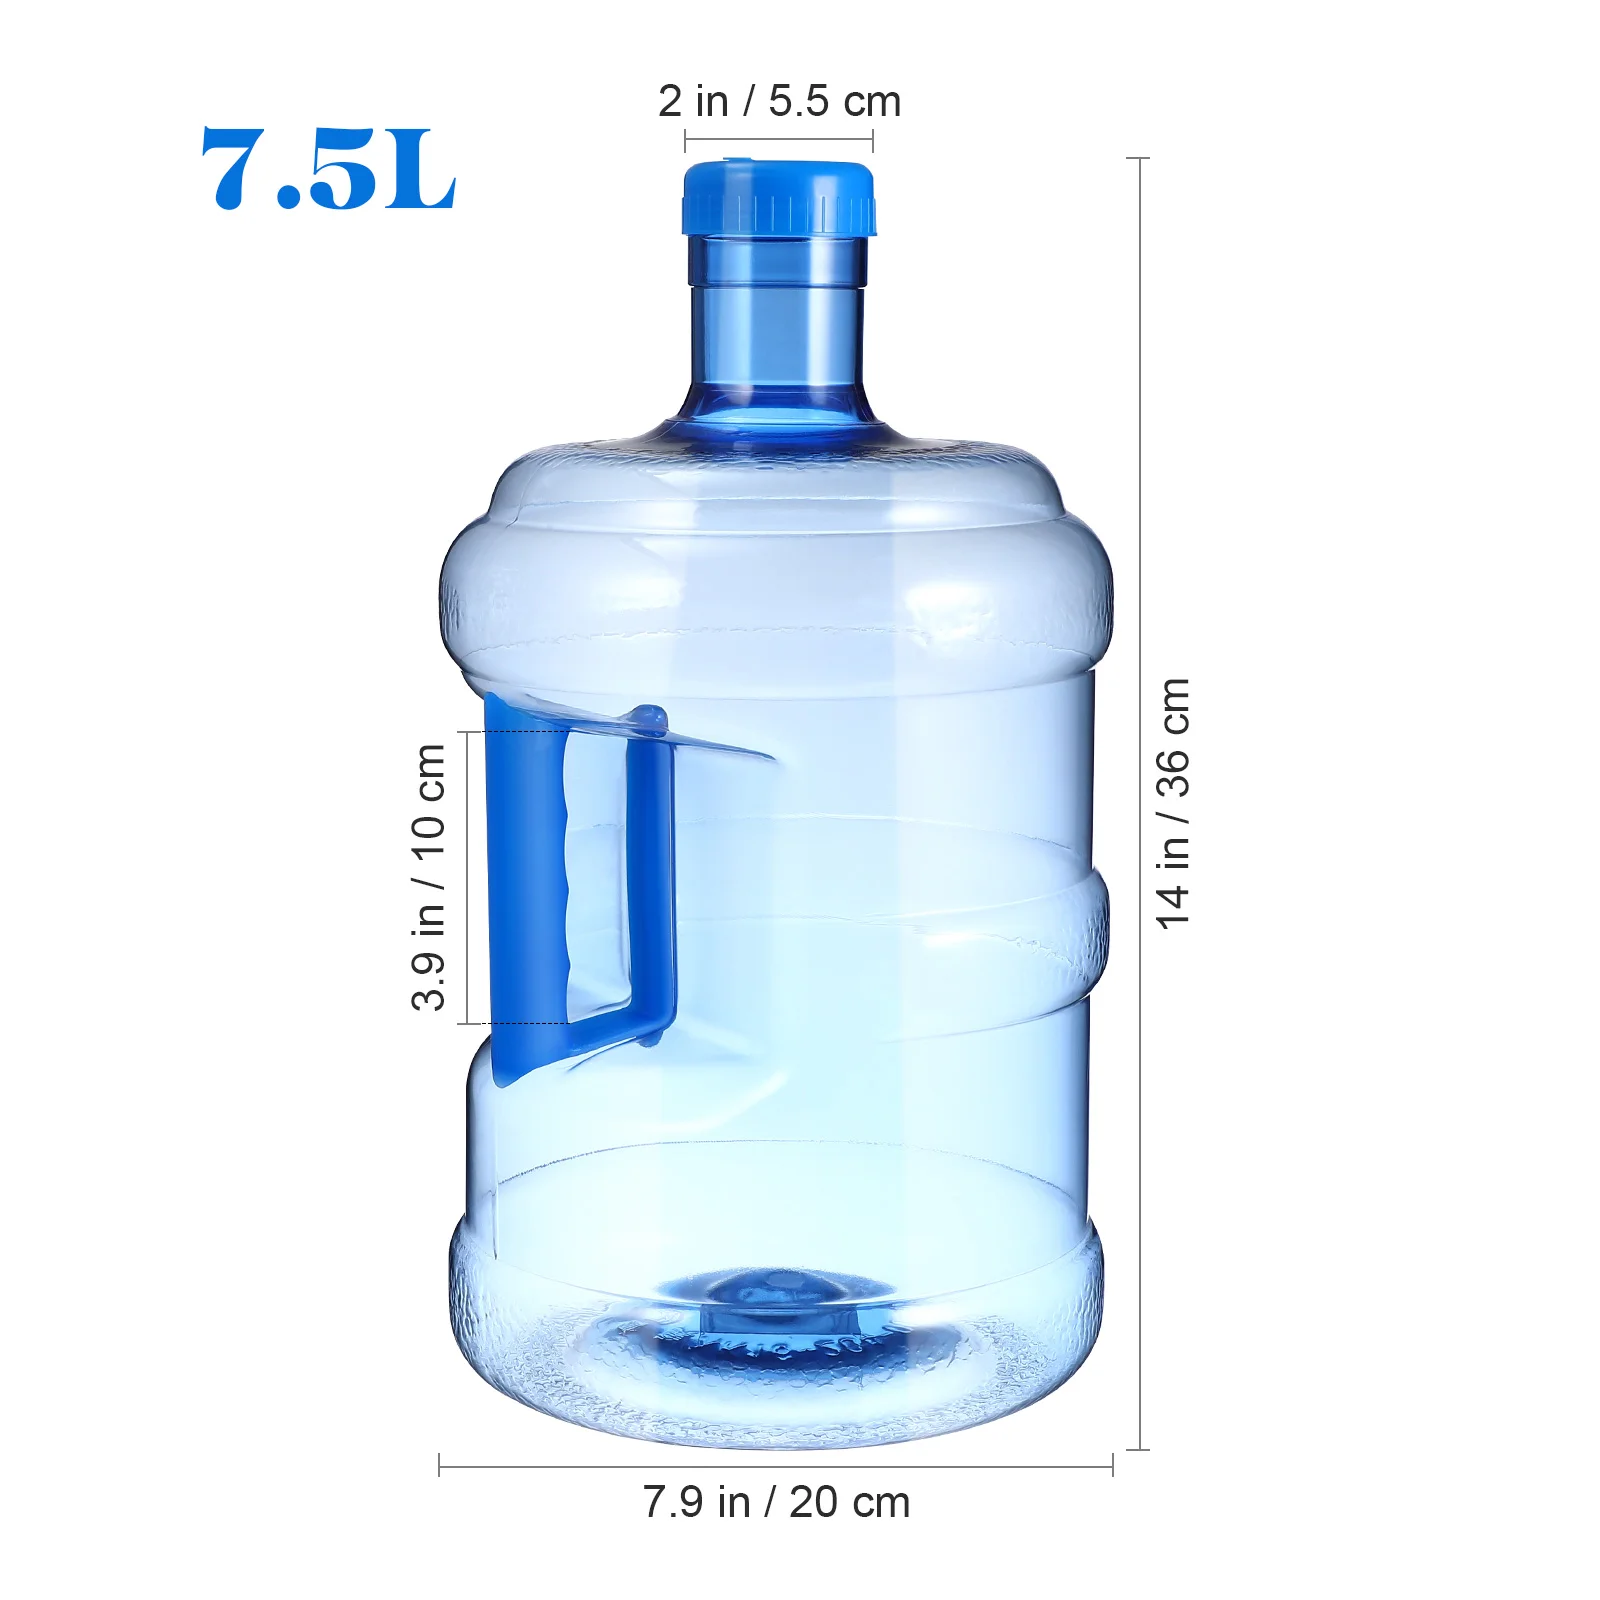 Ulcior de apă 75L Sticla de Apa Minerala Portabil Găleată de Apă pentru Masina de Drumeții în aer liber Camping . ' - ' . 5